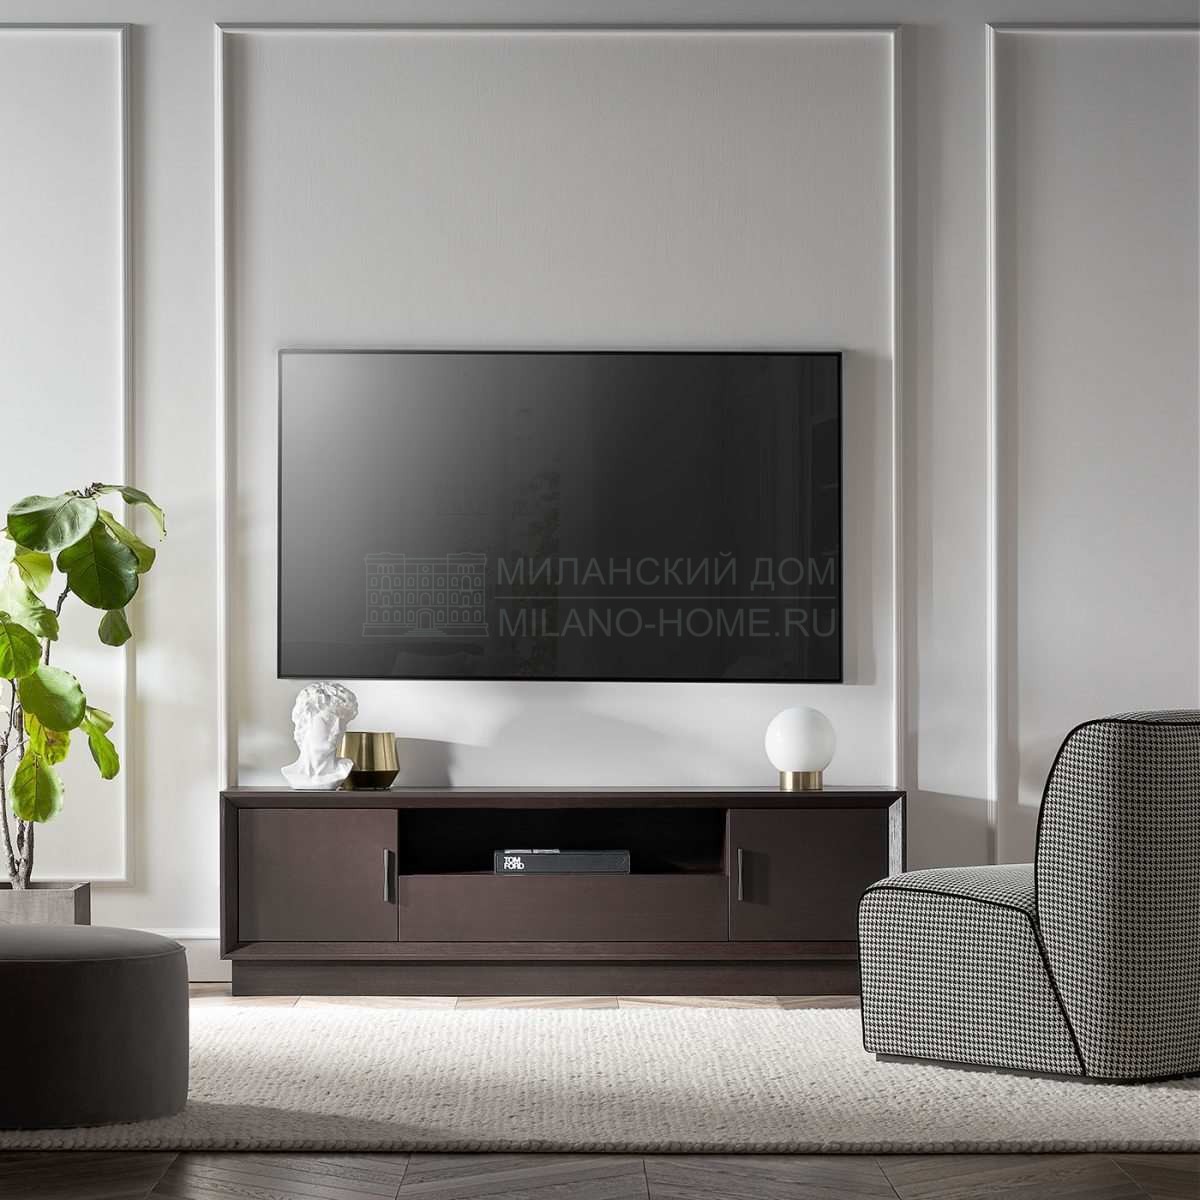 Мебель для ТВ Club tv cabinet из Италии фабрики TOSCONOVA